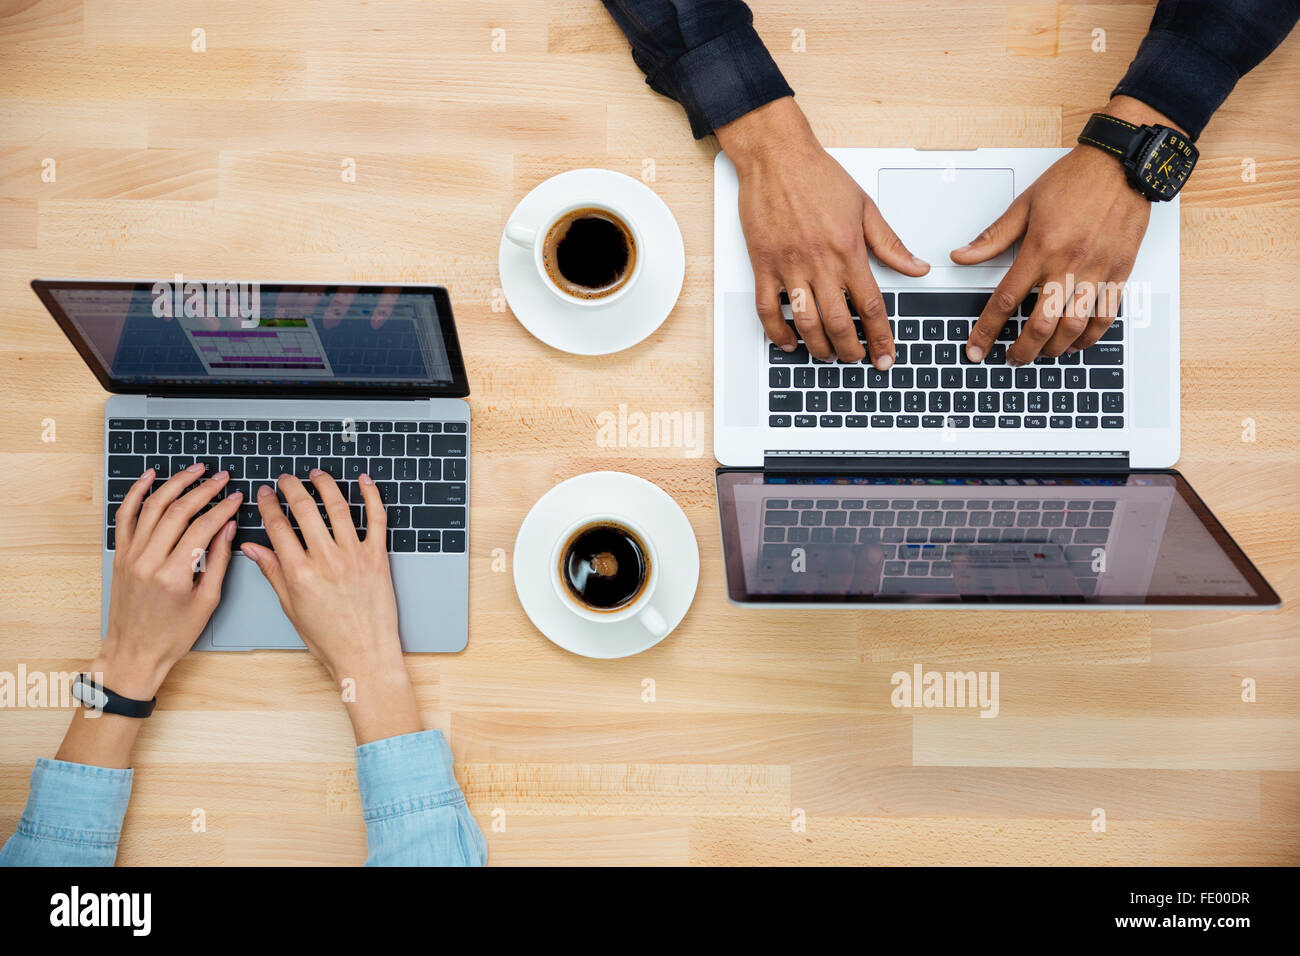 Draufsicht der Hände von Mann und Frau arbeiten mit zwei Laptops und Kaffeetrinken auf Holztisch Stockfoto